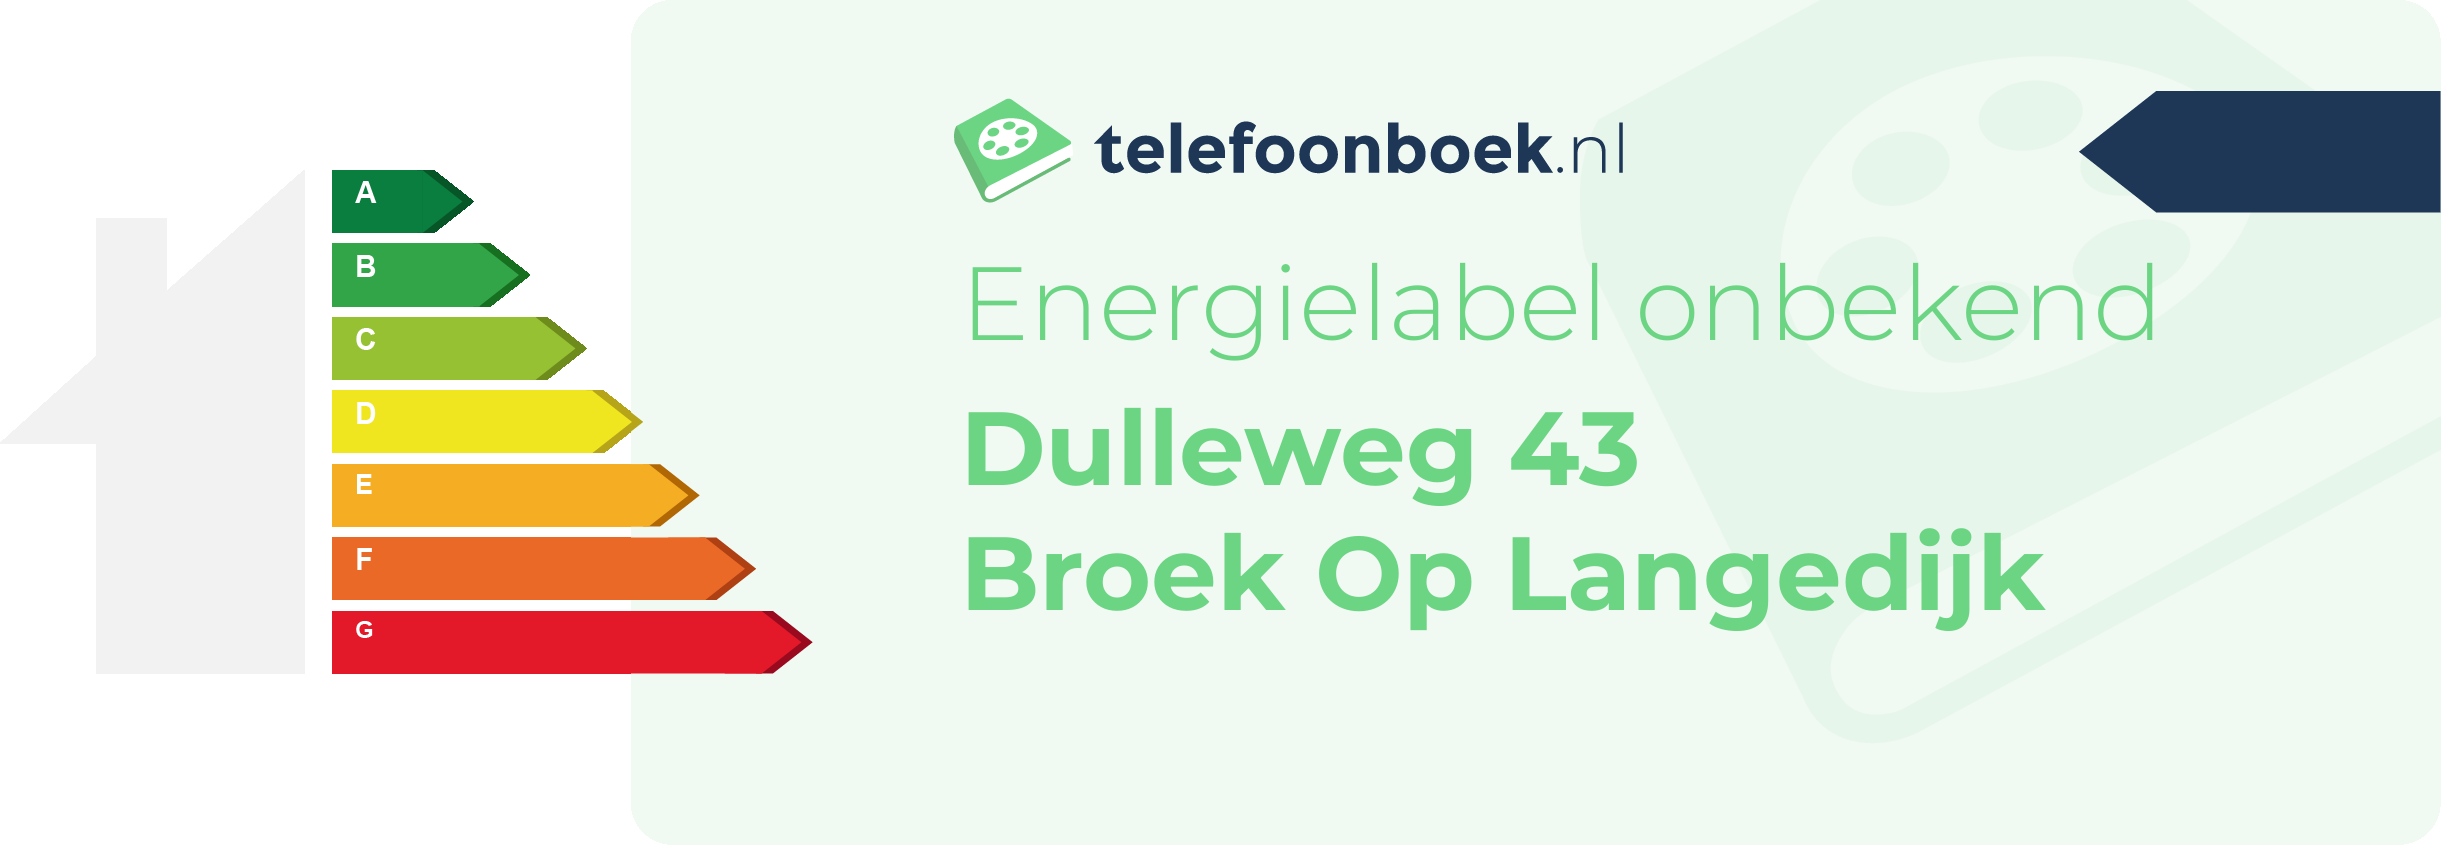 Energielabel Dulleweg 43 Broek Op Langedijk